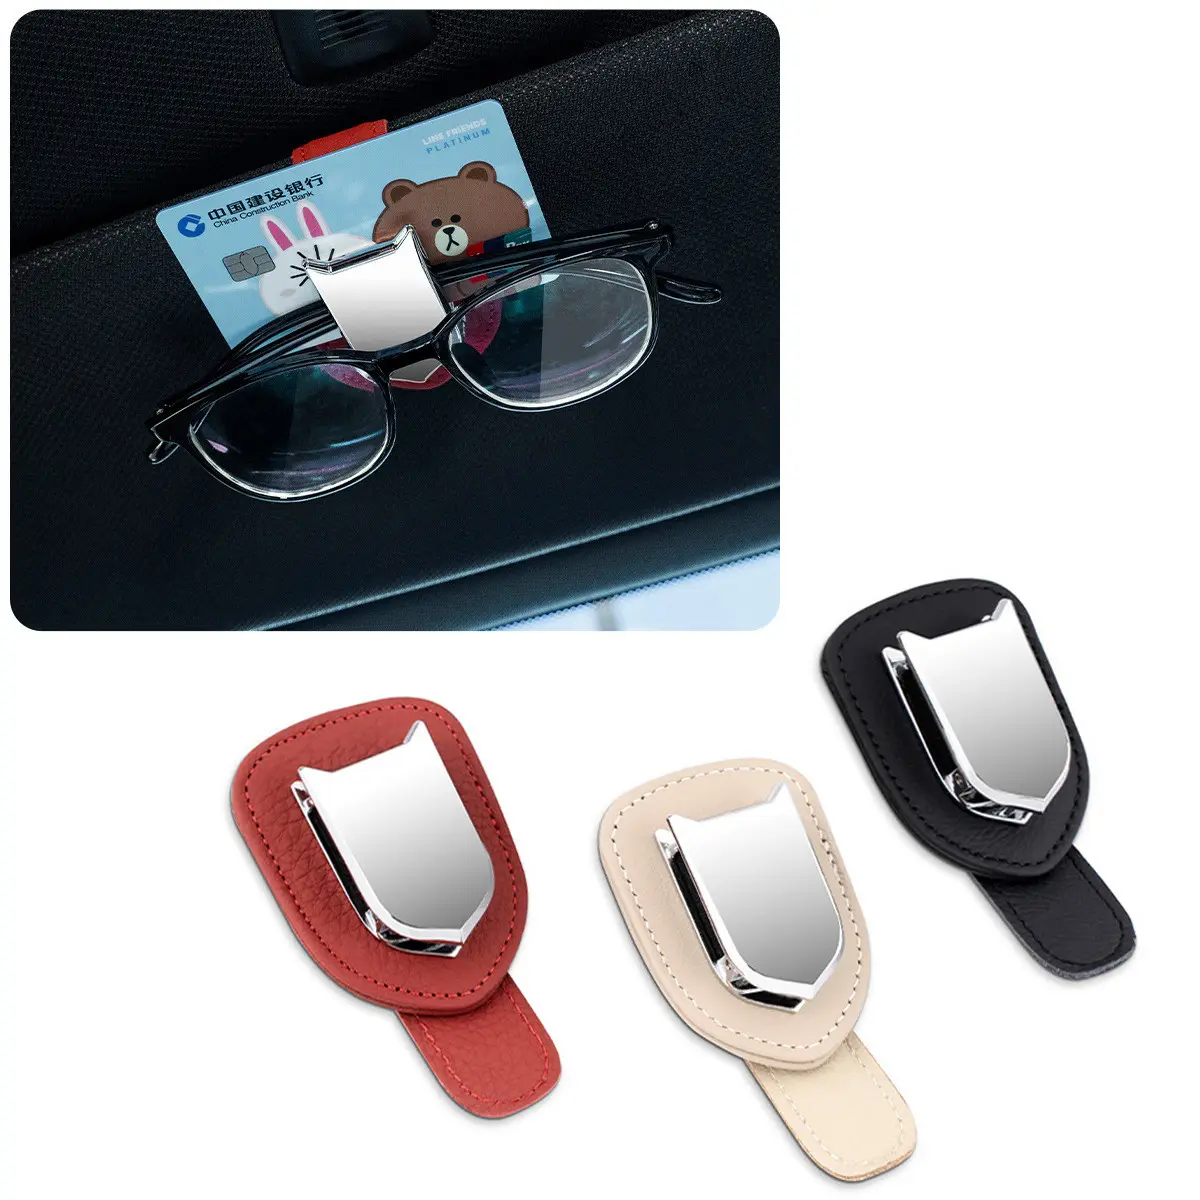 Grampo suporte de óculos de para-sol de carro, portátil, presilha de carro, porta-óculos de sol, carro